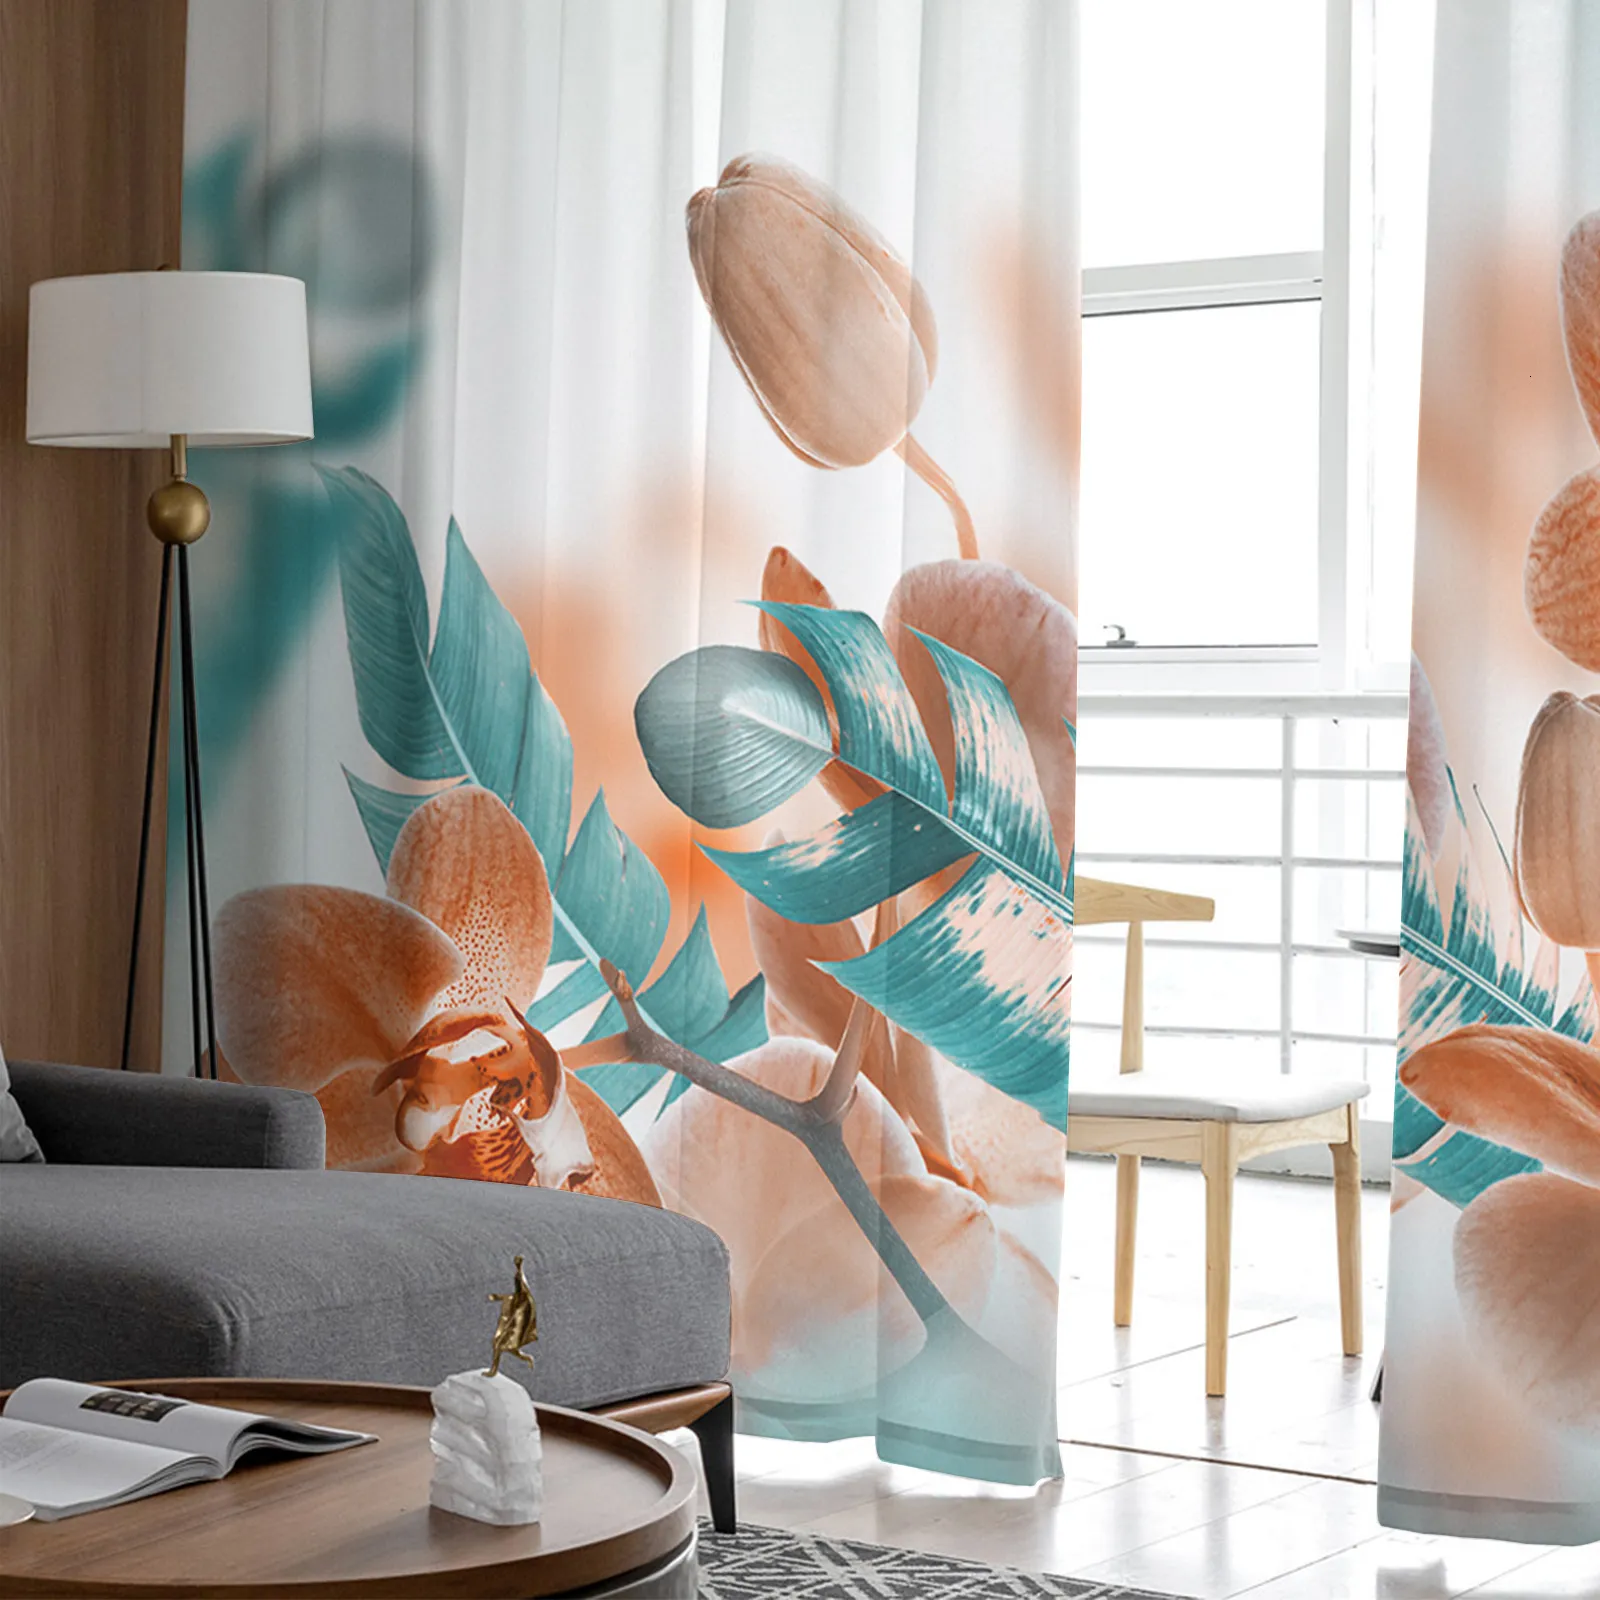 Acquista Paesaggio giapponese con tende trasparenti Sakura per finestre per  soggiorno, camera da letto, tende in voile e tulle, tende in tessuto per la  cucina